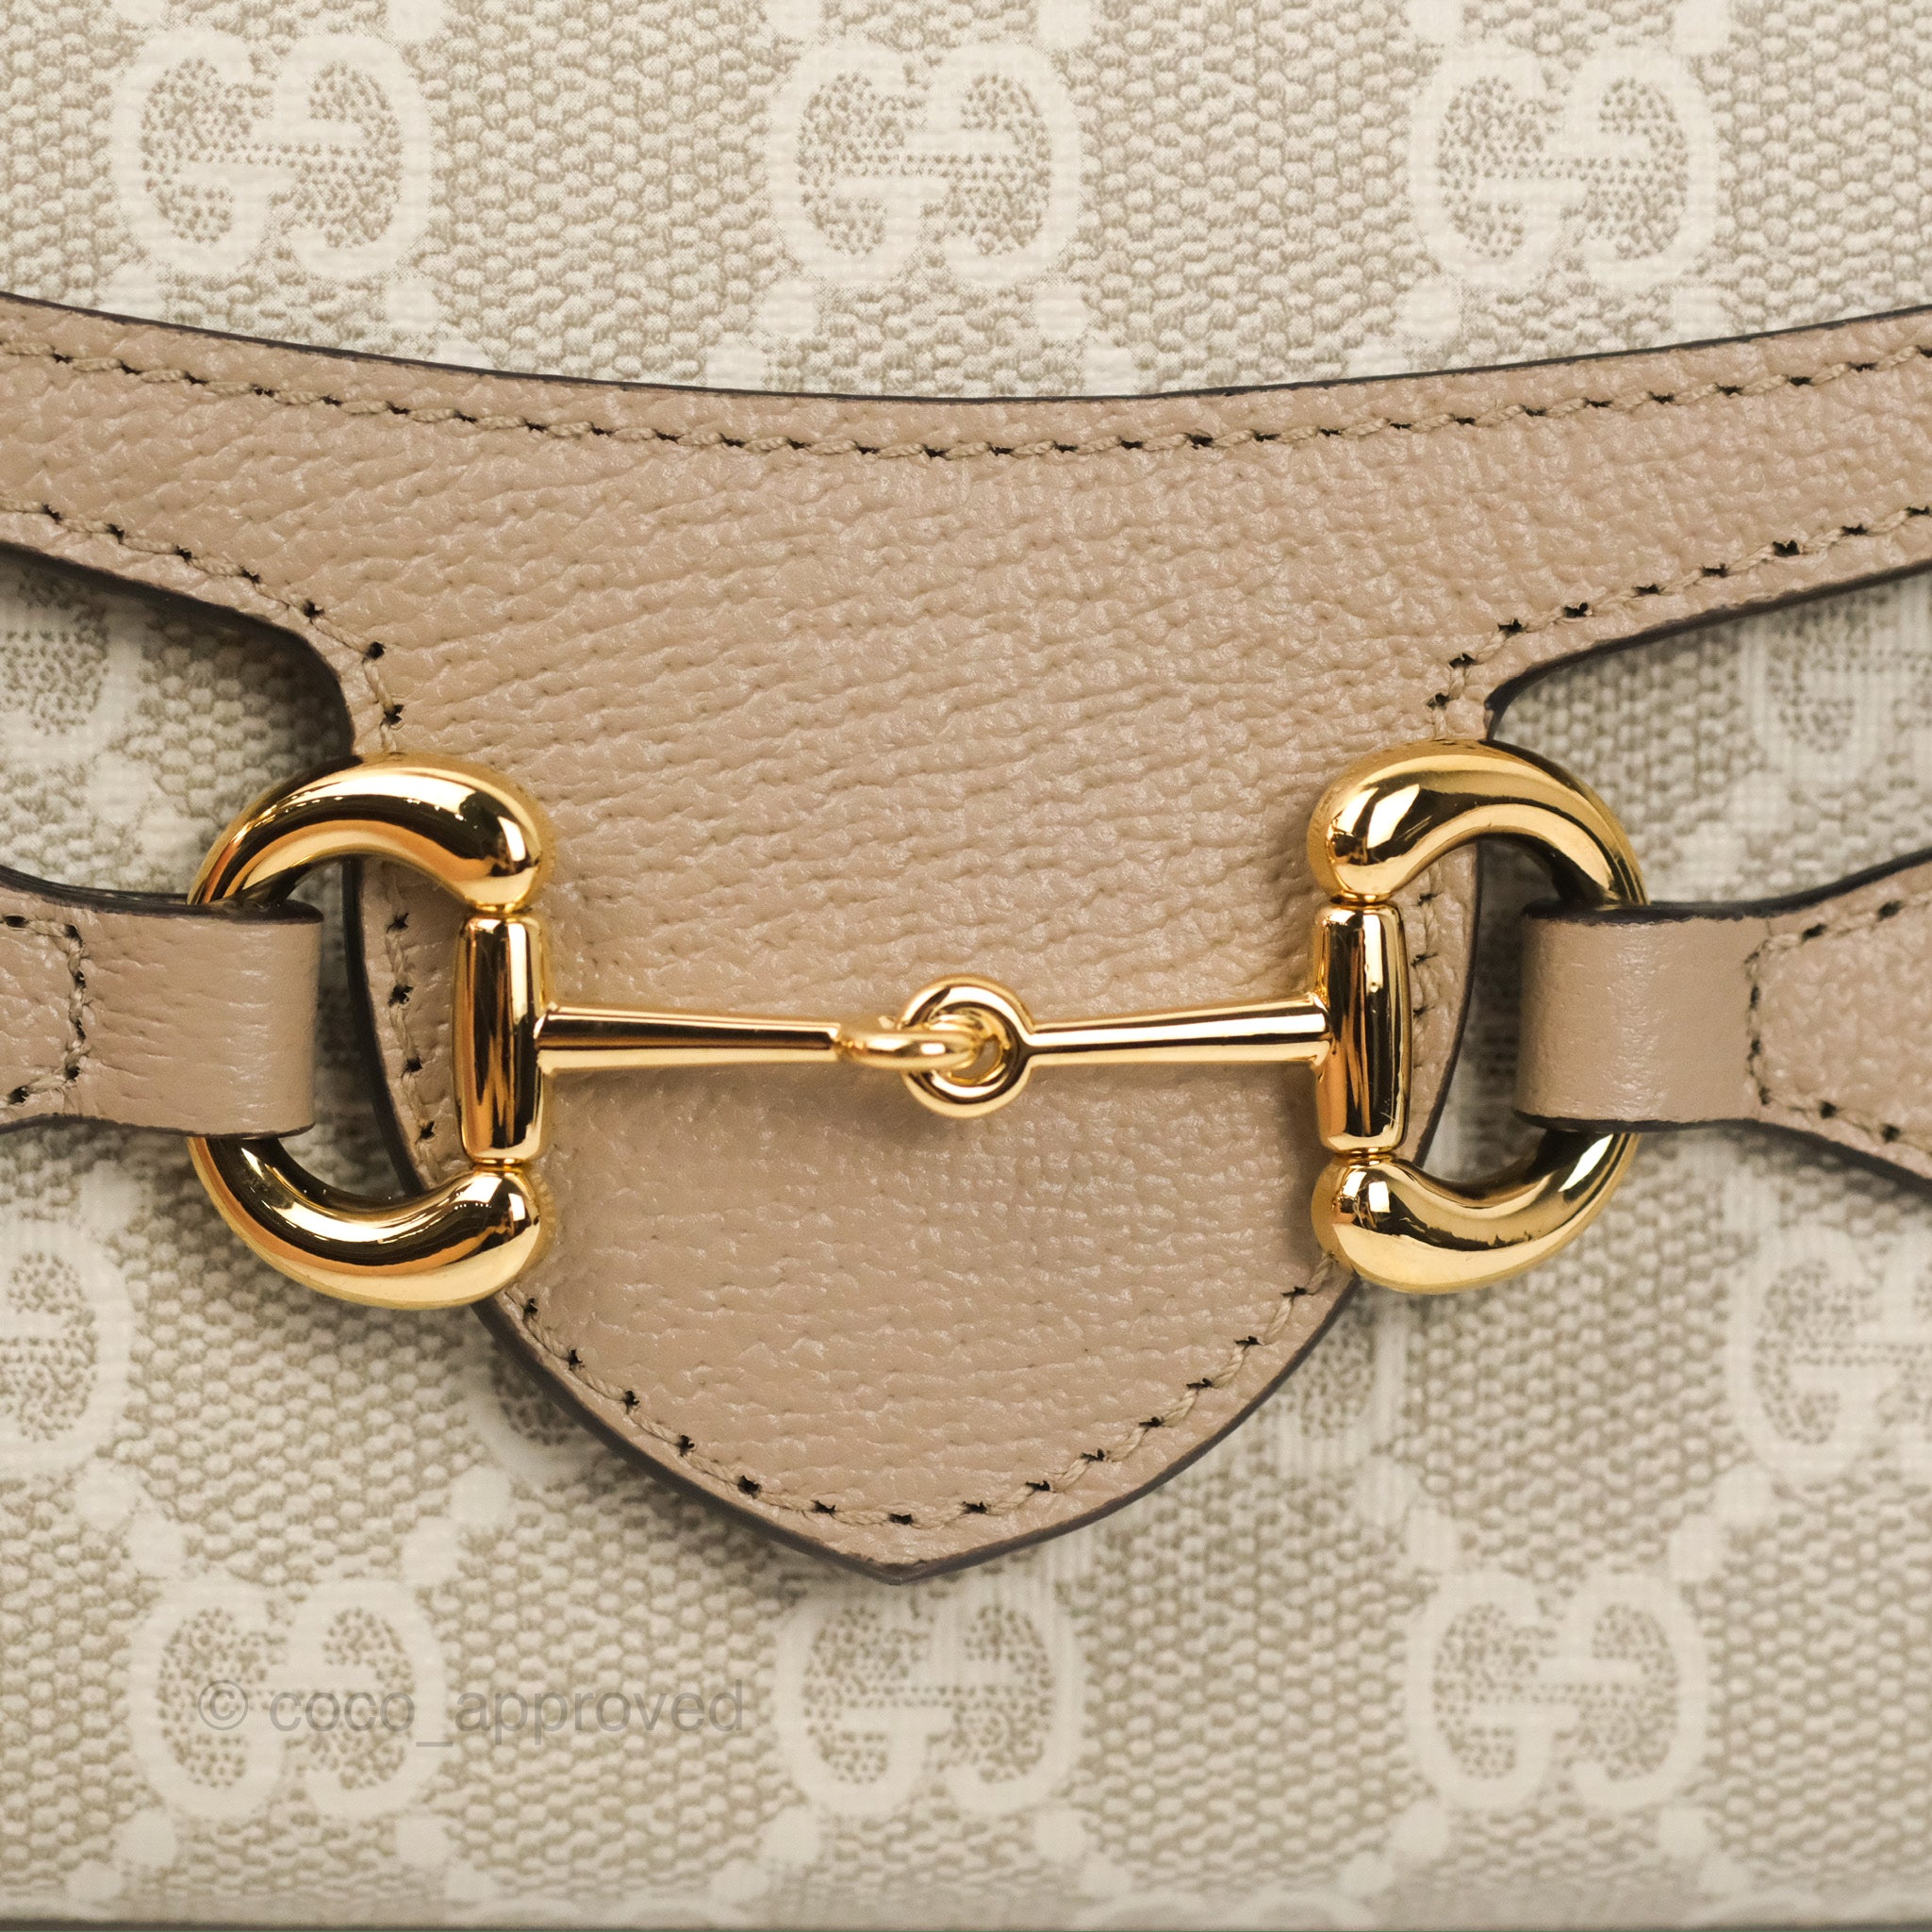 Gucci Horsebit 1955 mini bag in beige and white GG rhombus